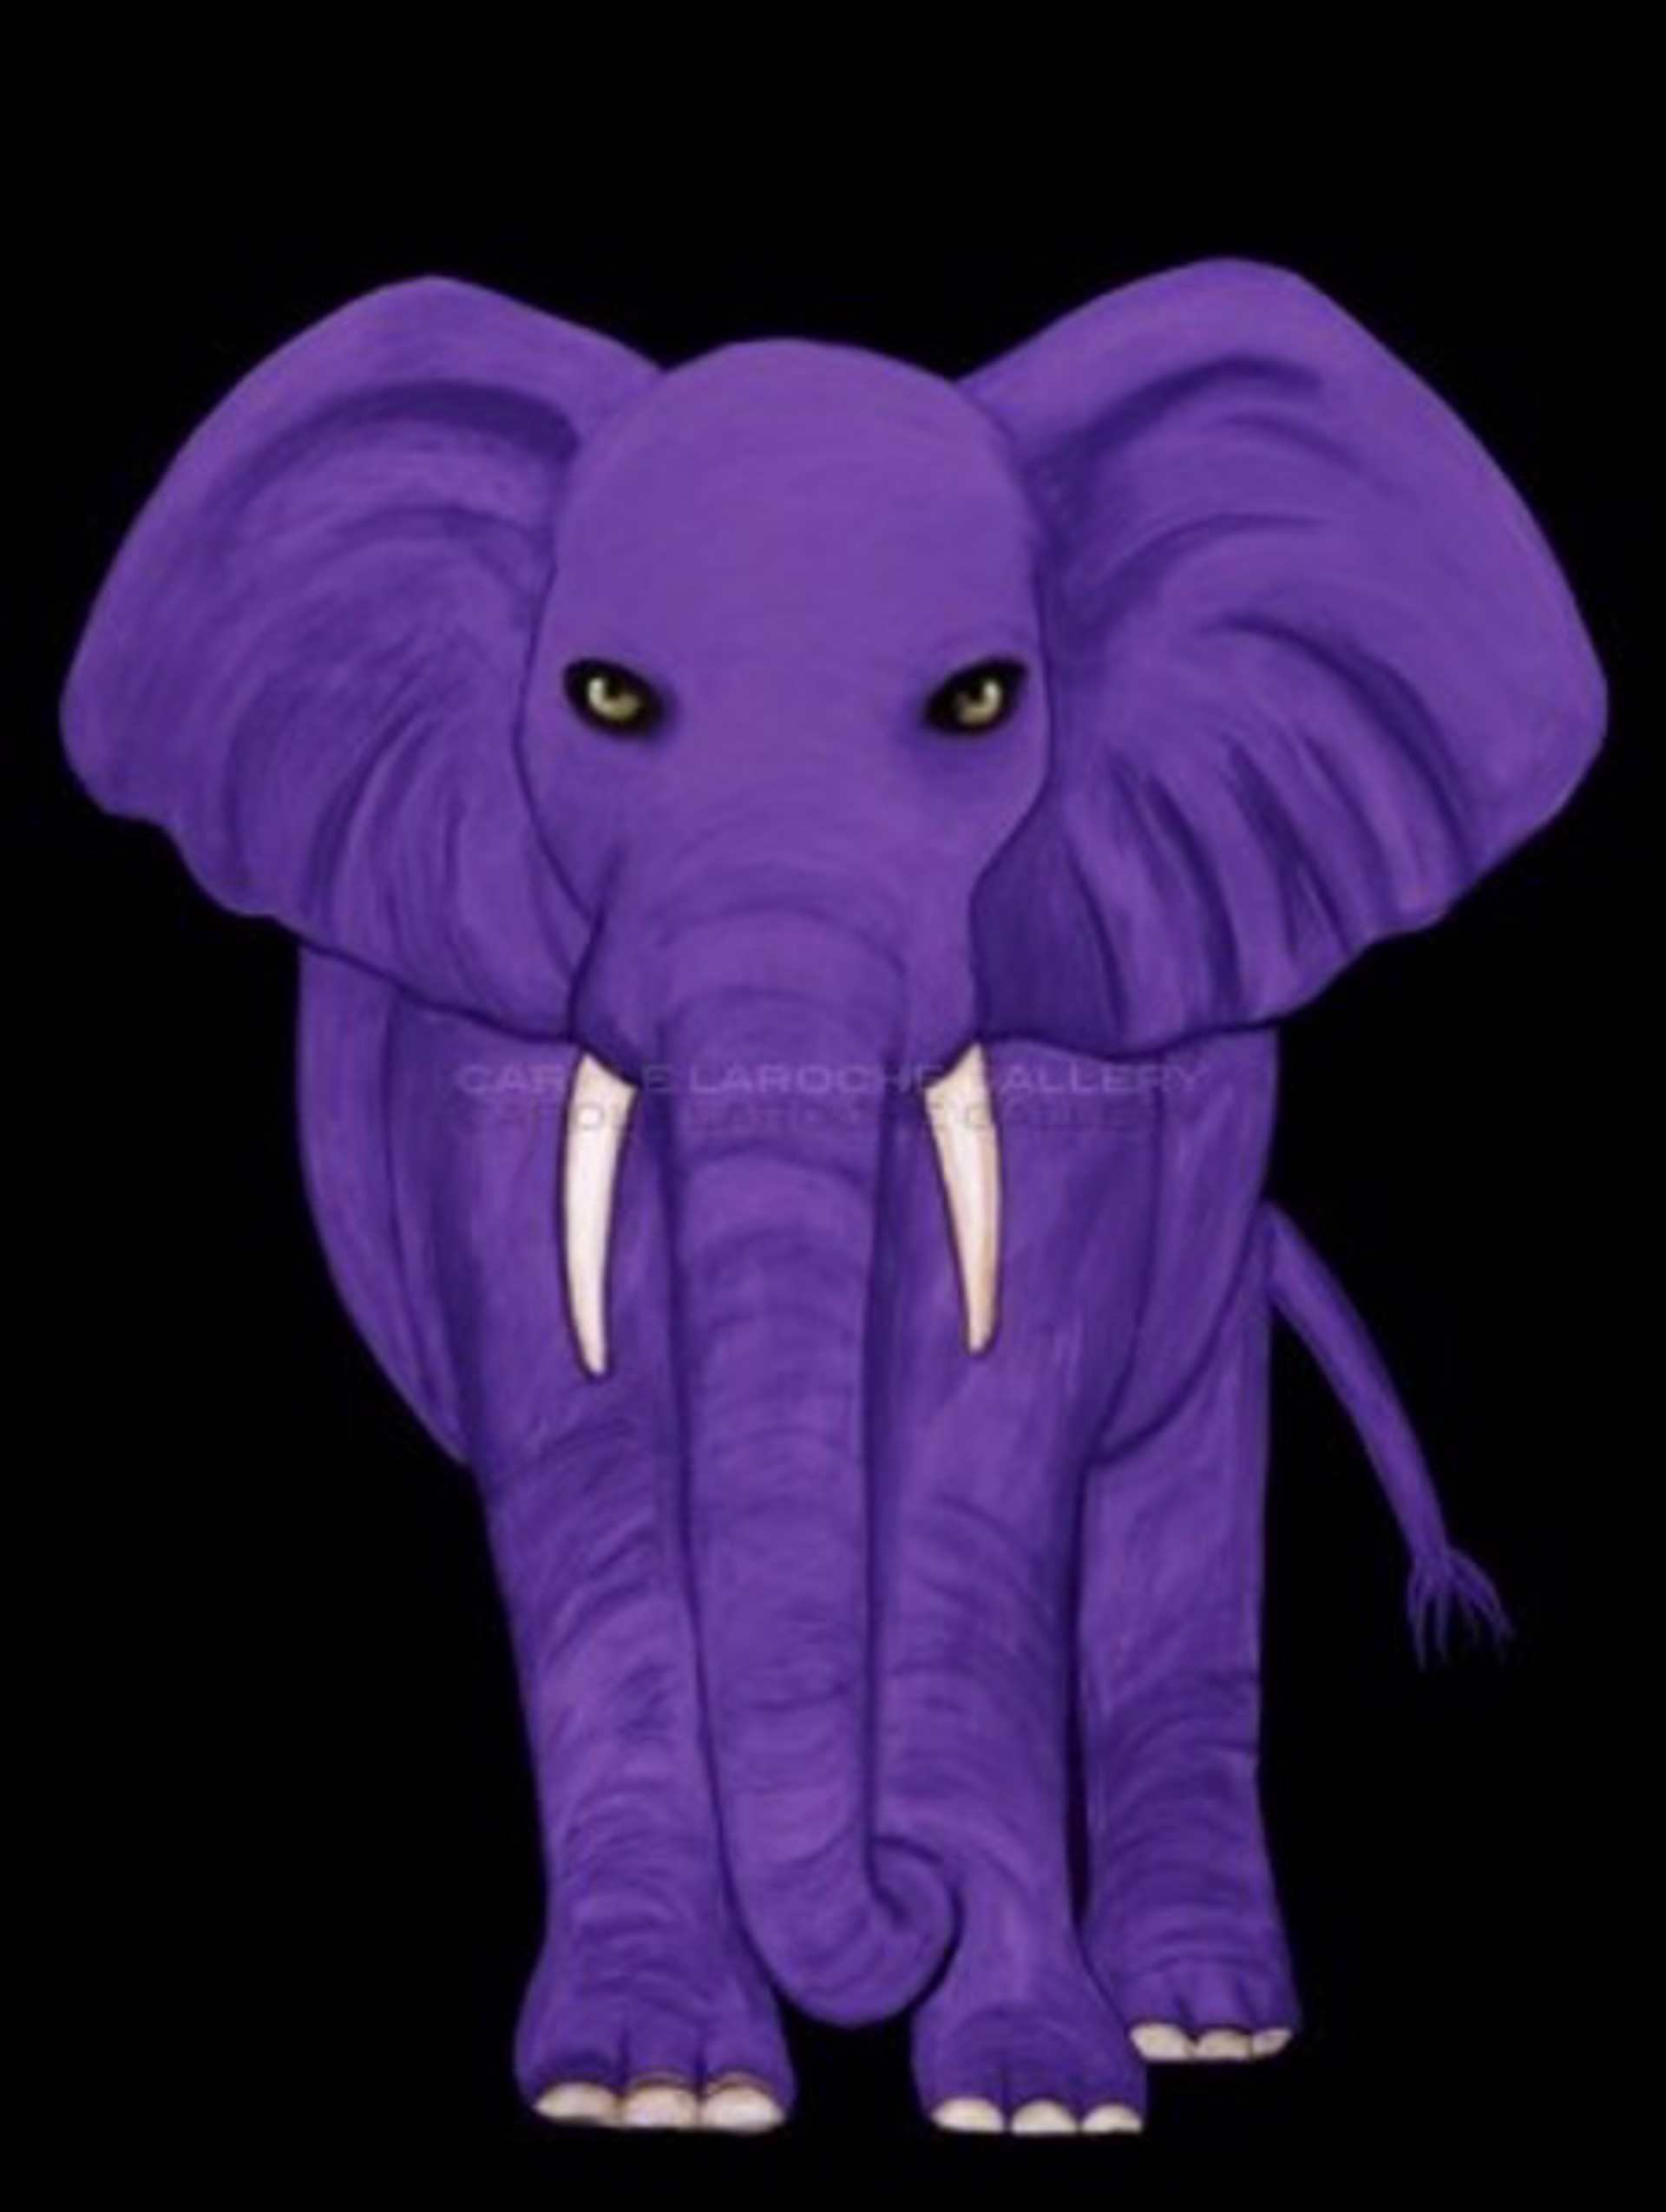 Purple Elephant by Carole LaRoche